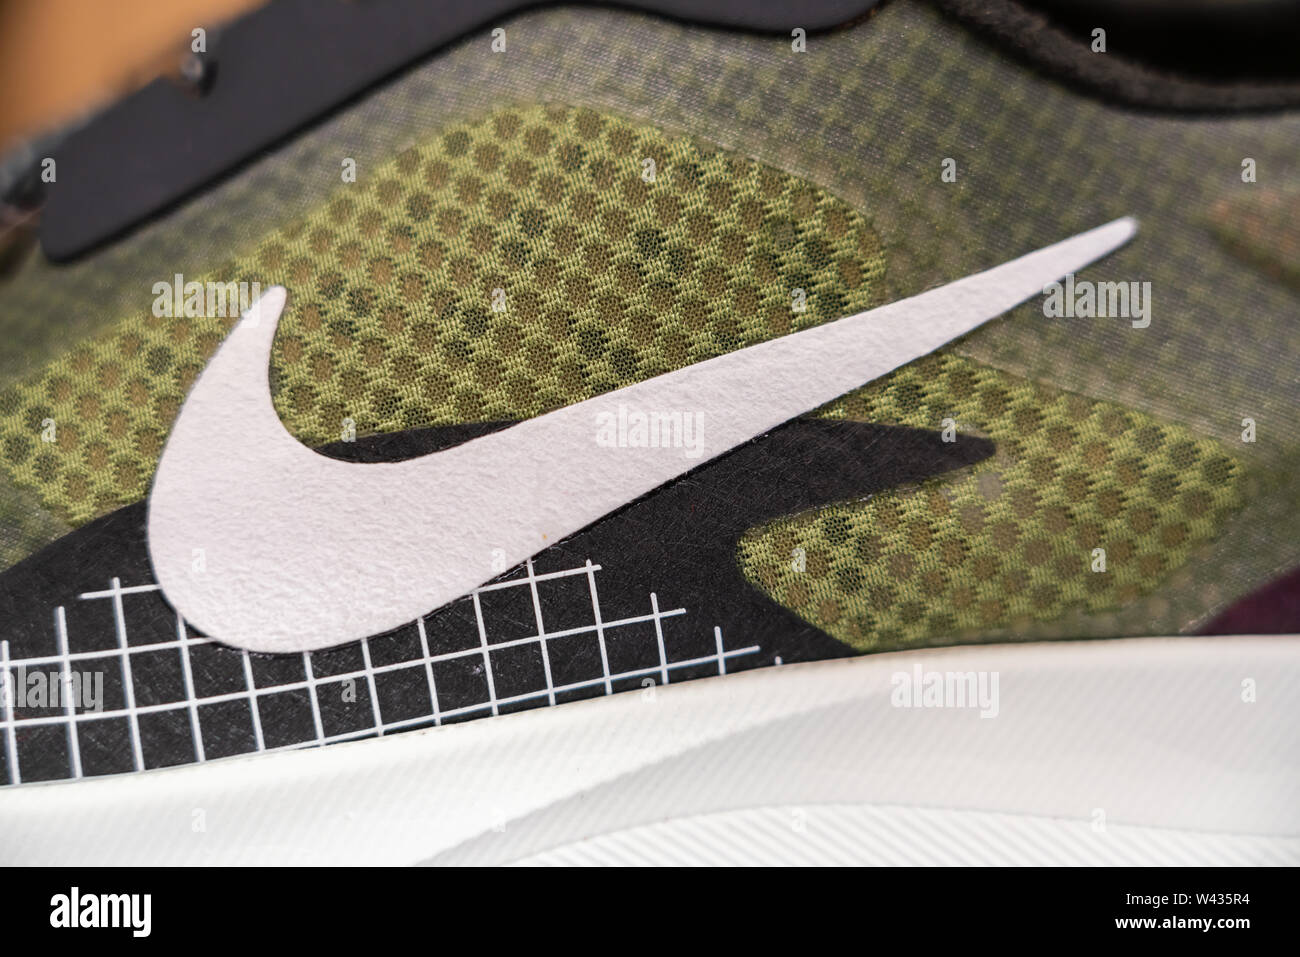 Fabricant de vêtements de multinationale américaine logo Nike vu sur une chaussure. Banque D'Images